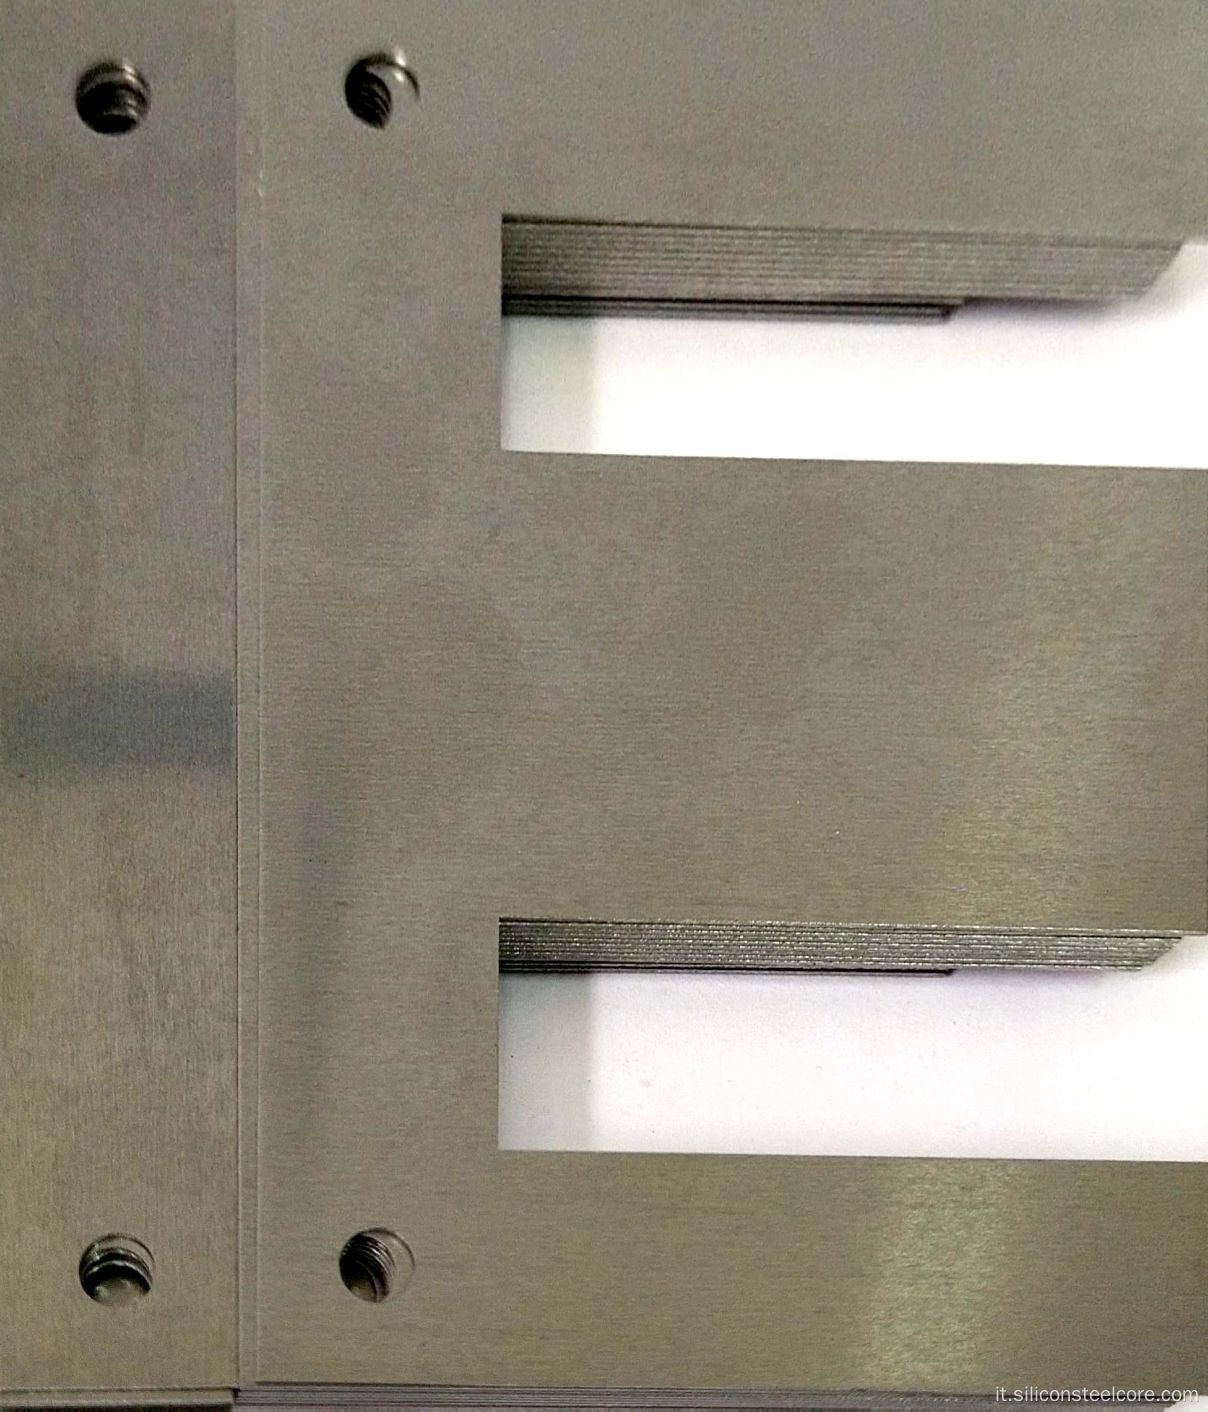 Foglio elettrico CRGO Core di laminazione laminato a freddo per trasformatore, inverter, spessore: 0,35-0,50 mm foglio elettrico CRGO